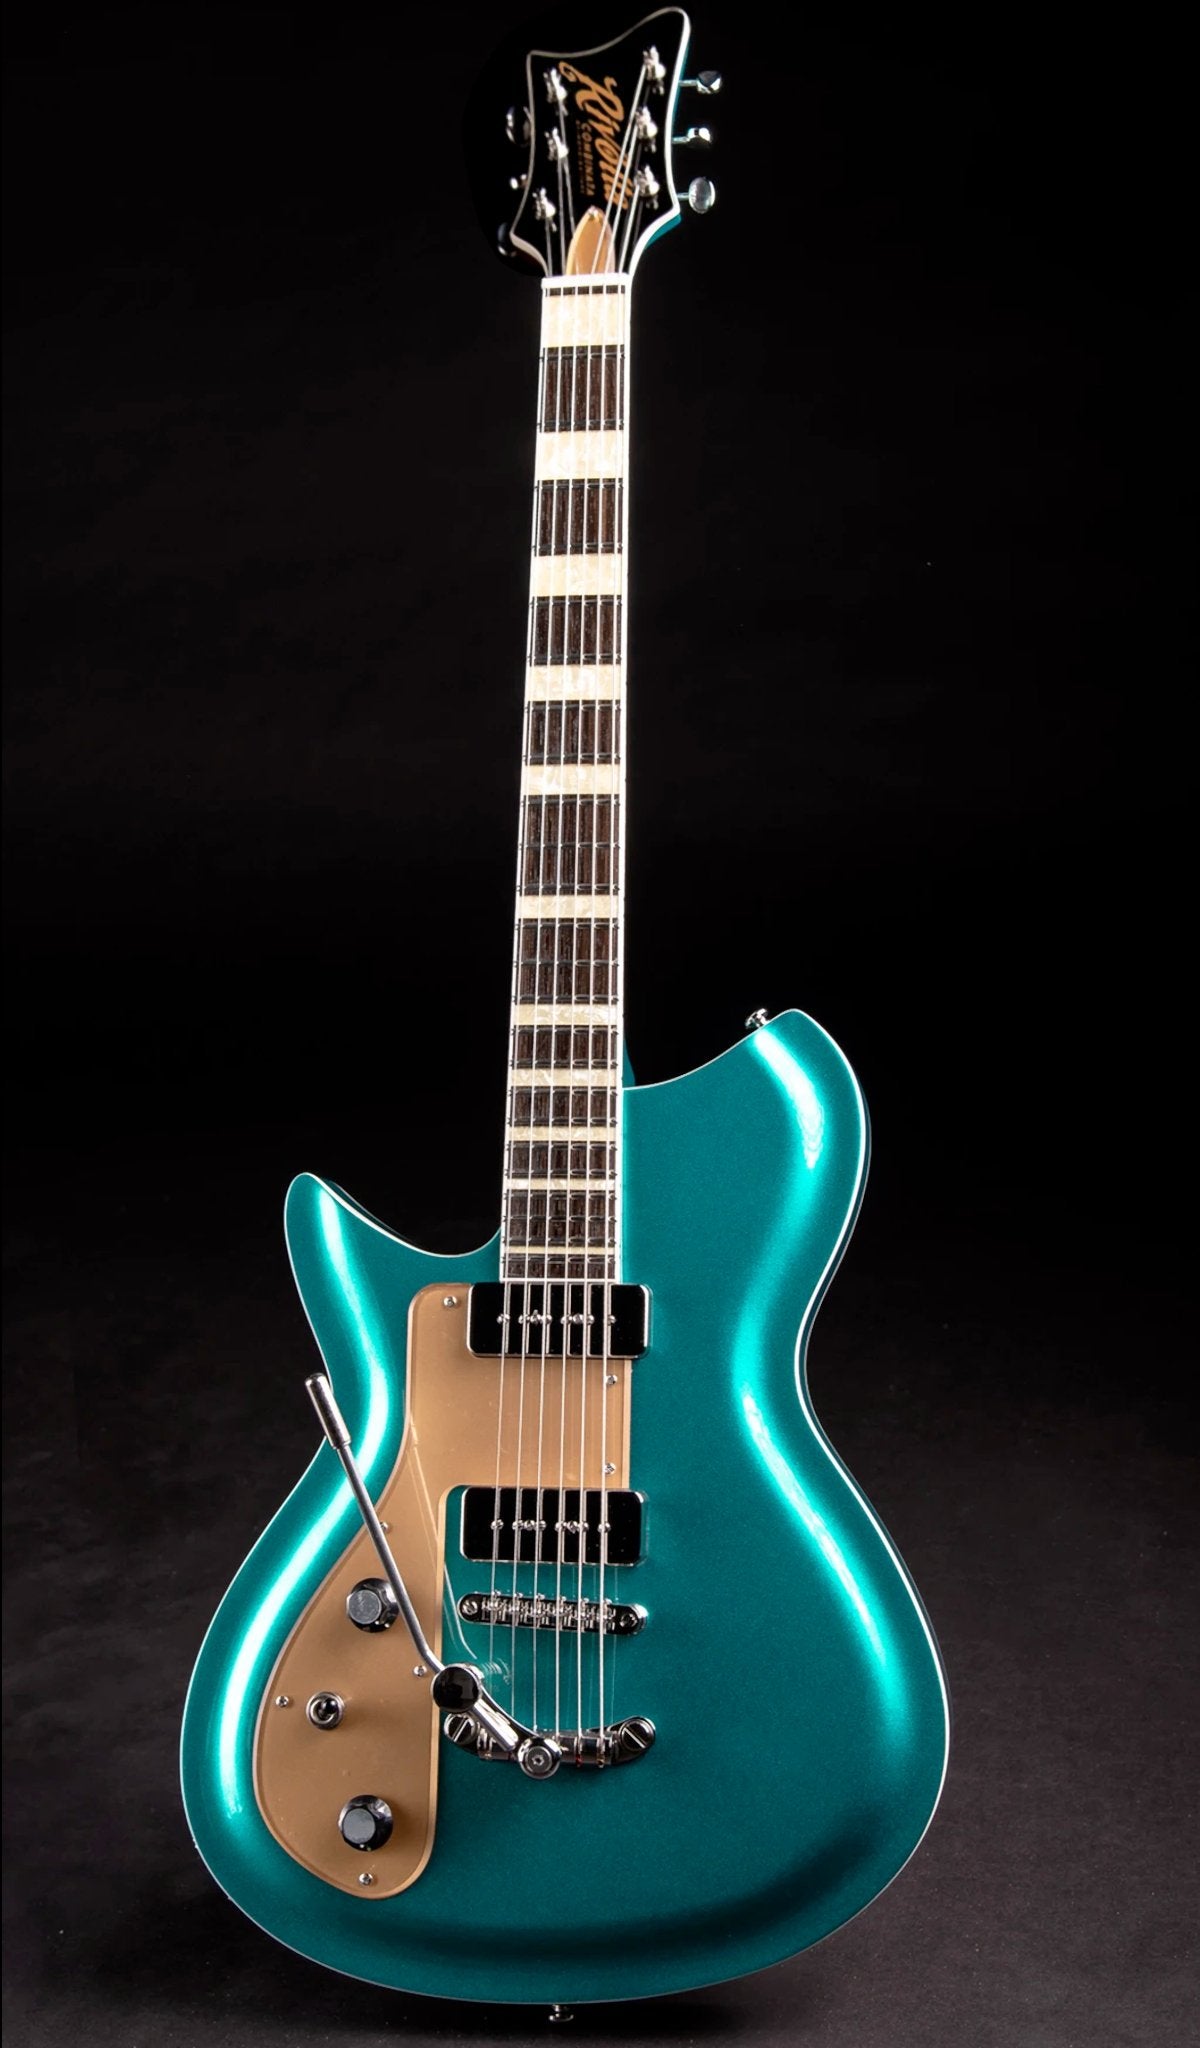 Eastwood Guitars Rivolta Combinata DLX Adriatic Blue Metallic LH Full Front